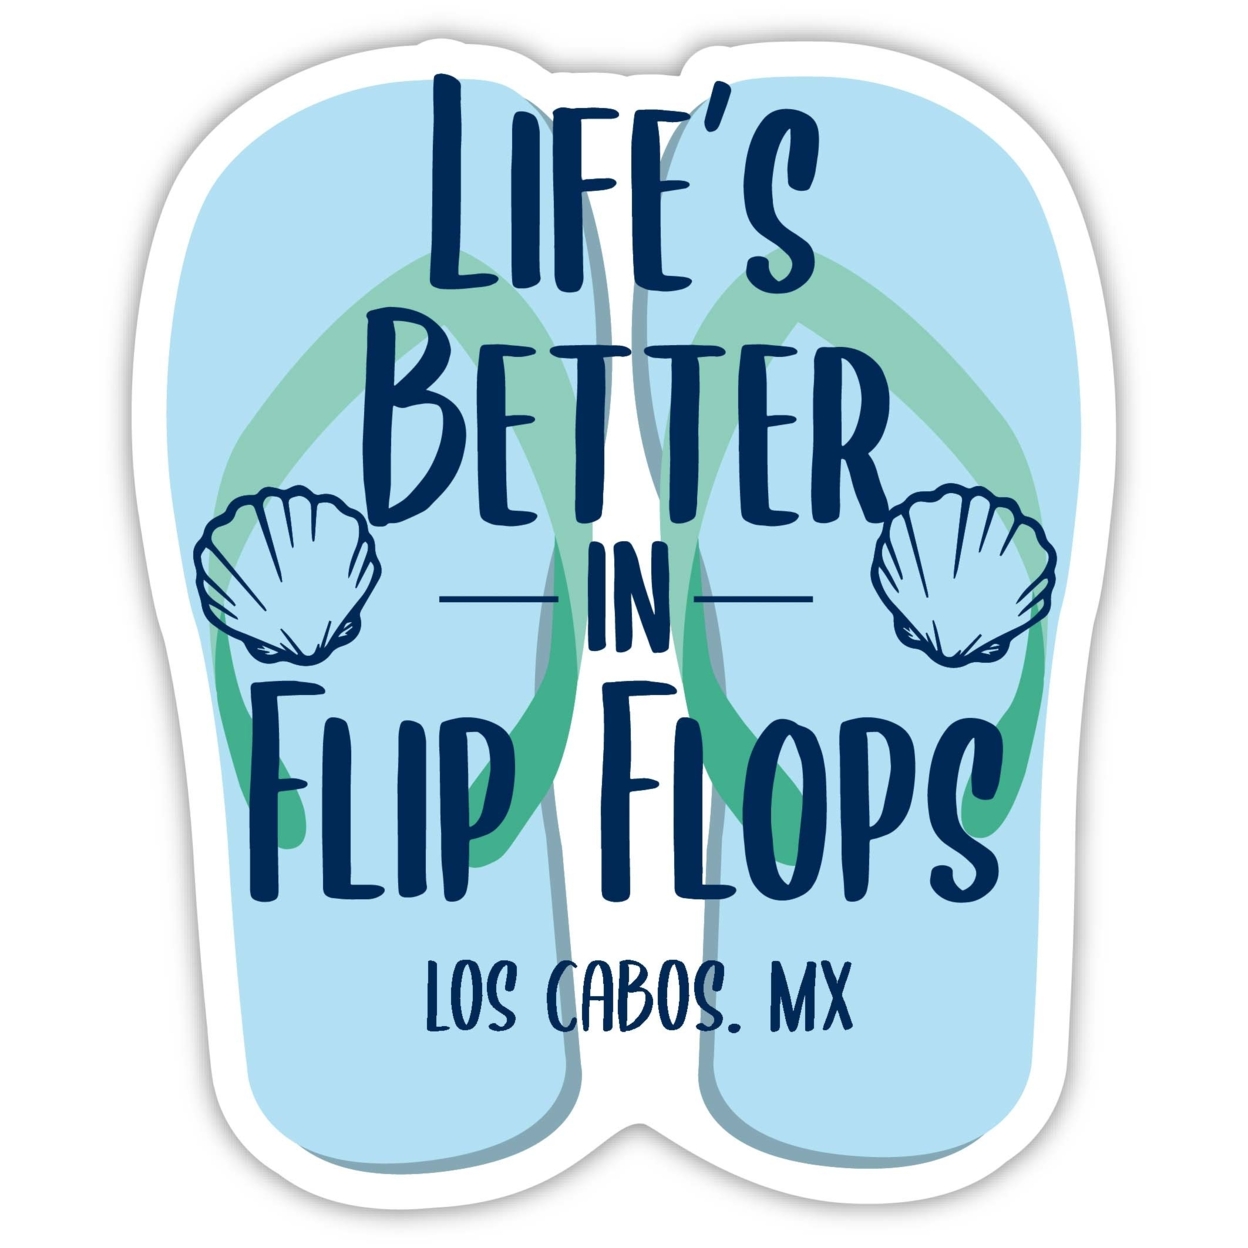 Los Cabos Mexico Souvenir 4 Inch Vinyl Decal Sticker Flip Flop Design